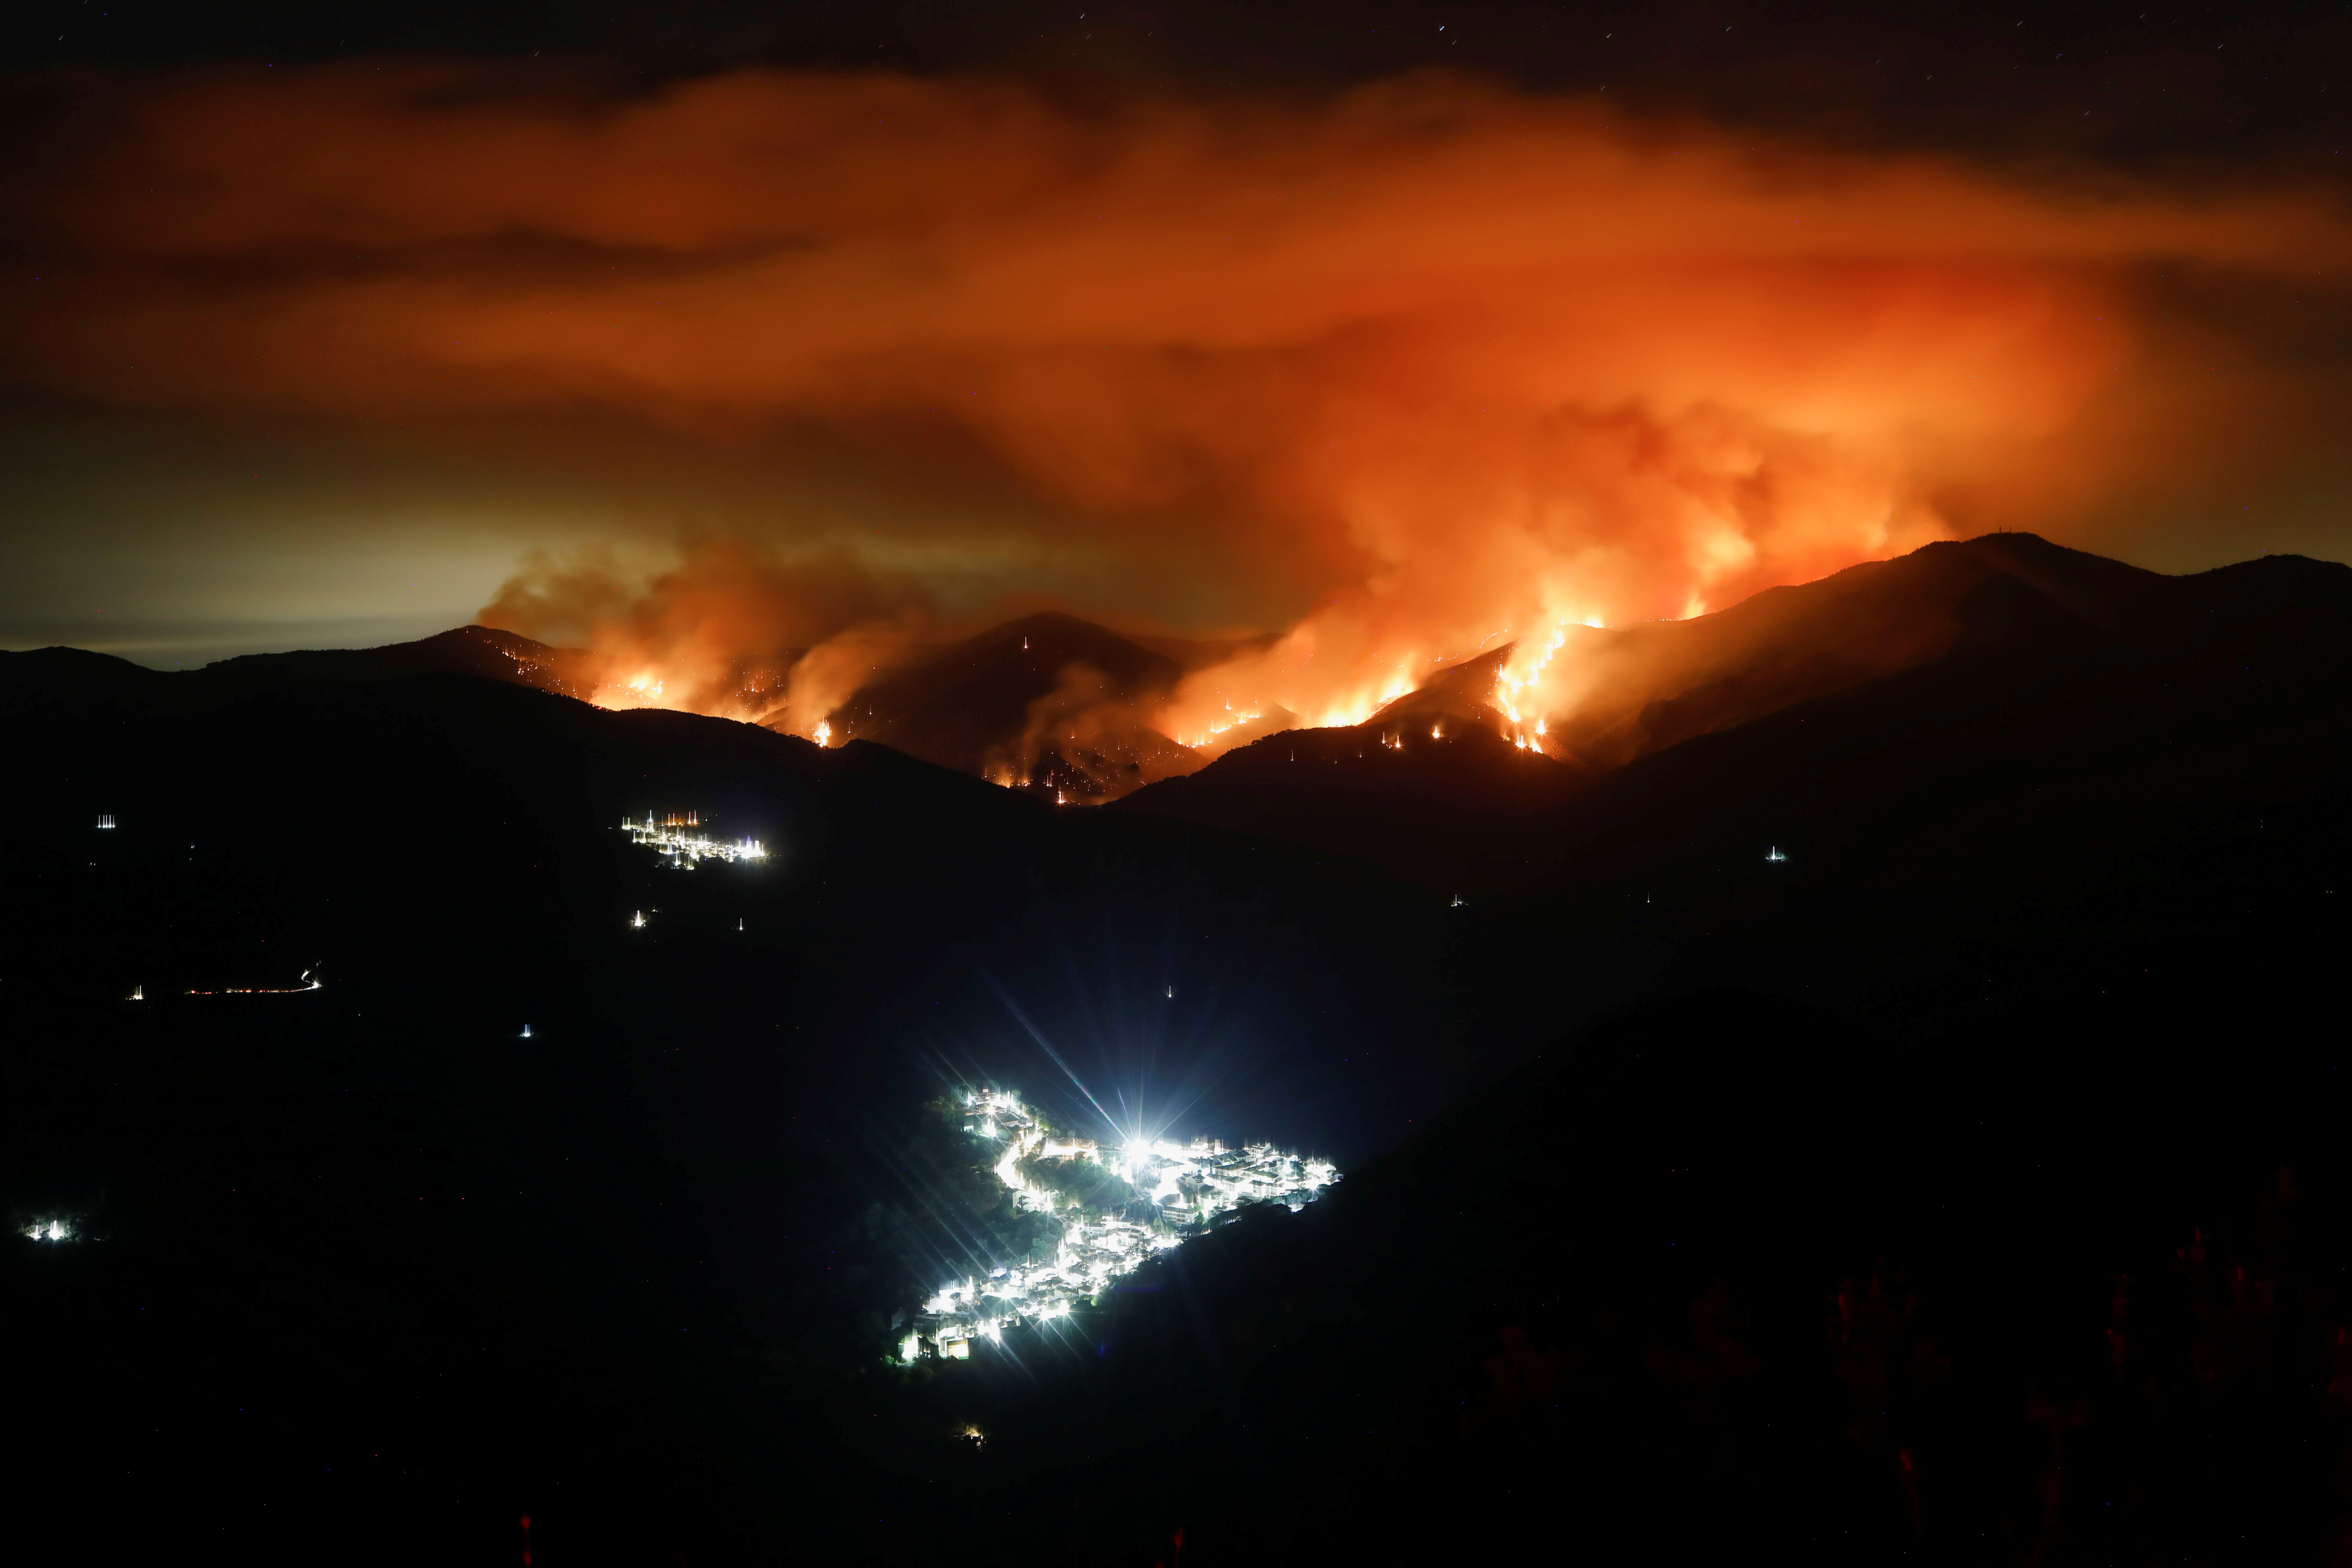 Wildfire on Sierra Bermeja mountain